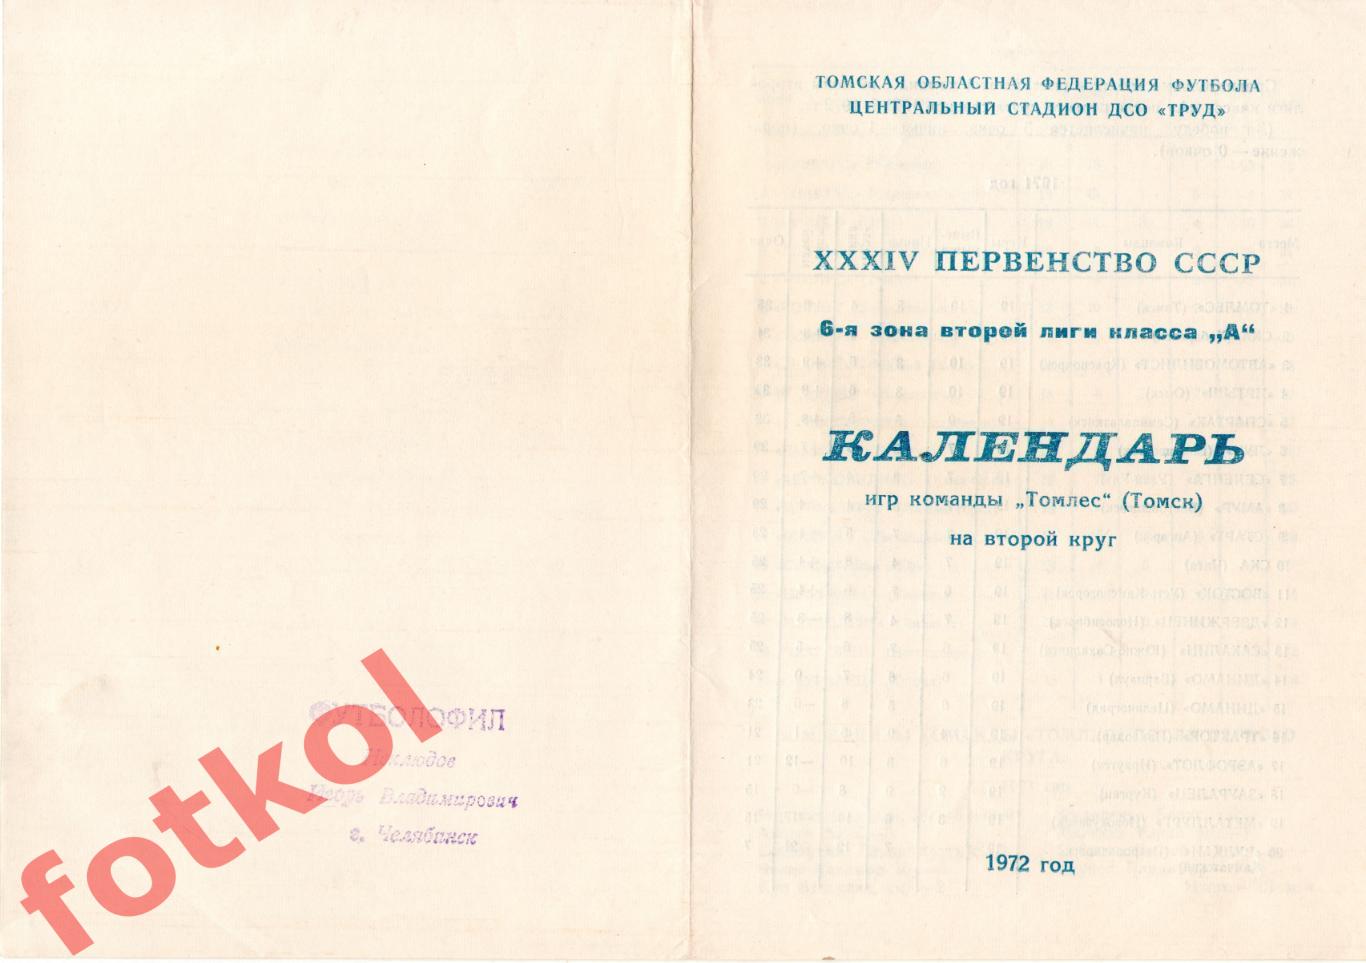 ТОМЛЕС Томск 1972 2 круг, календарь